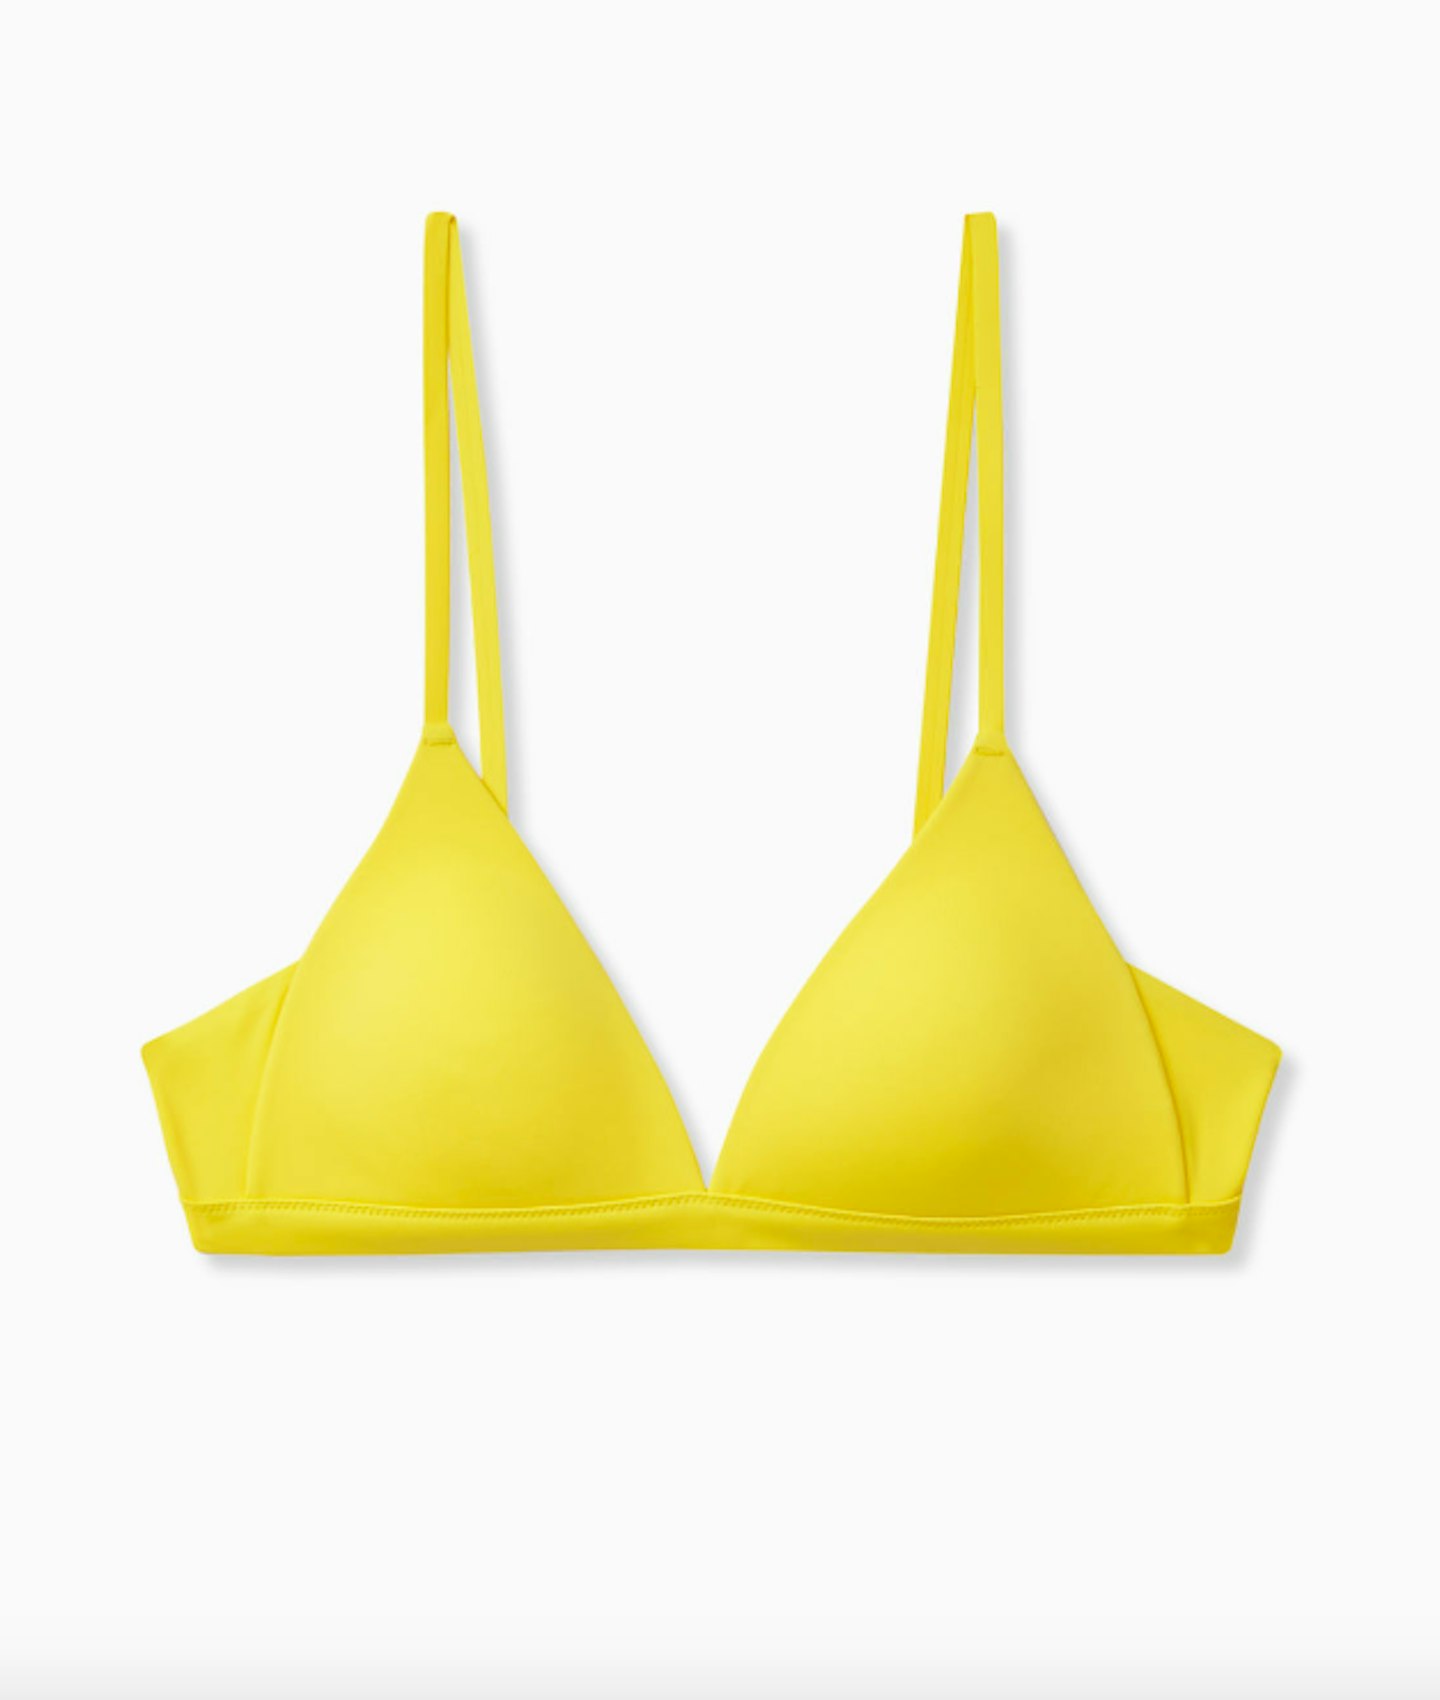 COS, Padded Triangle Bikini Top, £19